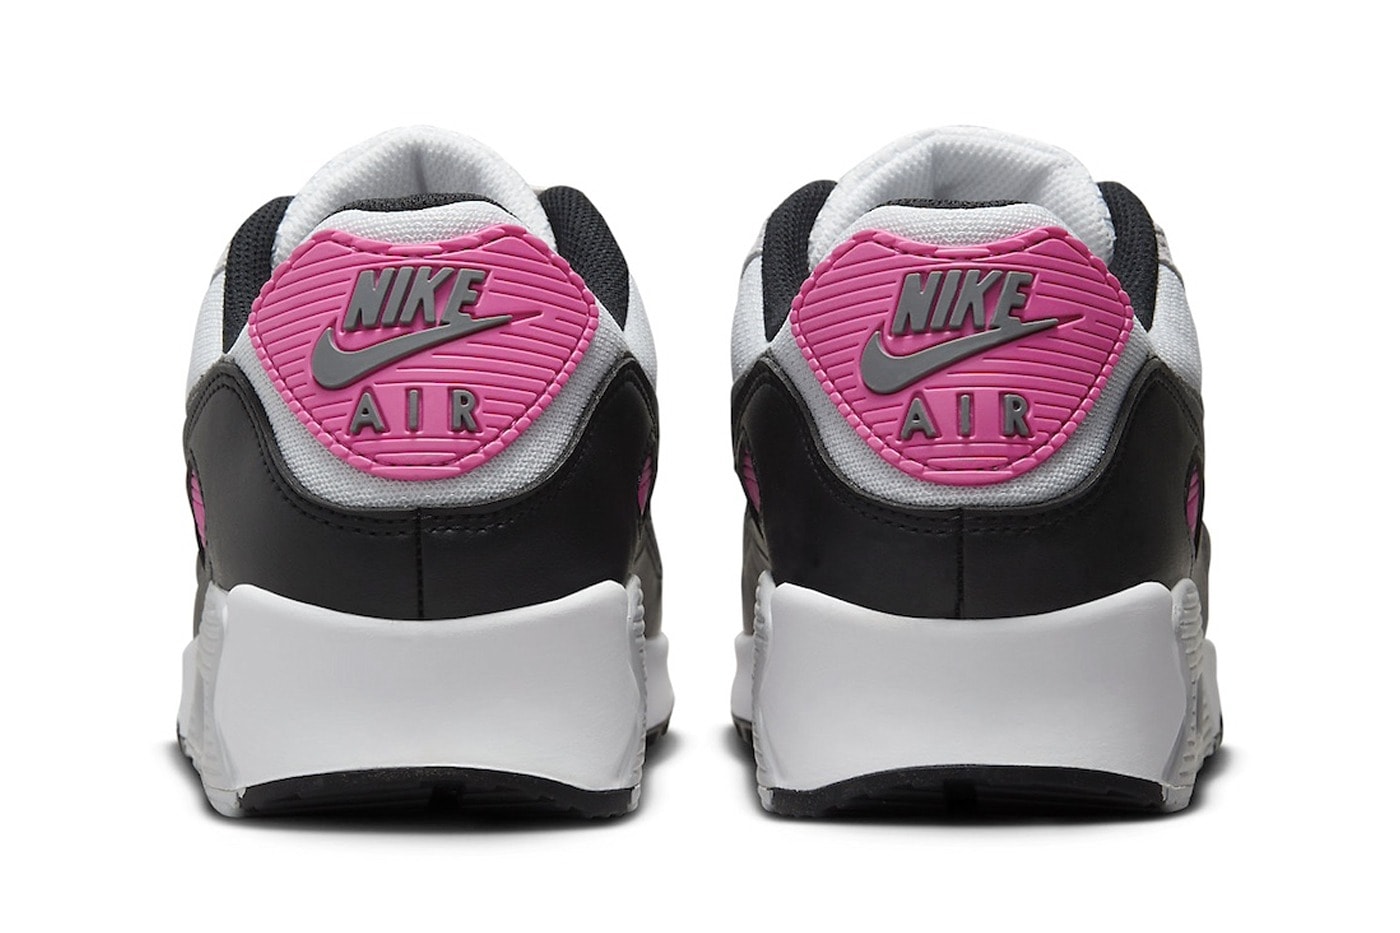 近賞 Nike Air Max 90 全新配色「Pure Platinum/Alchemy Pink」